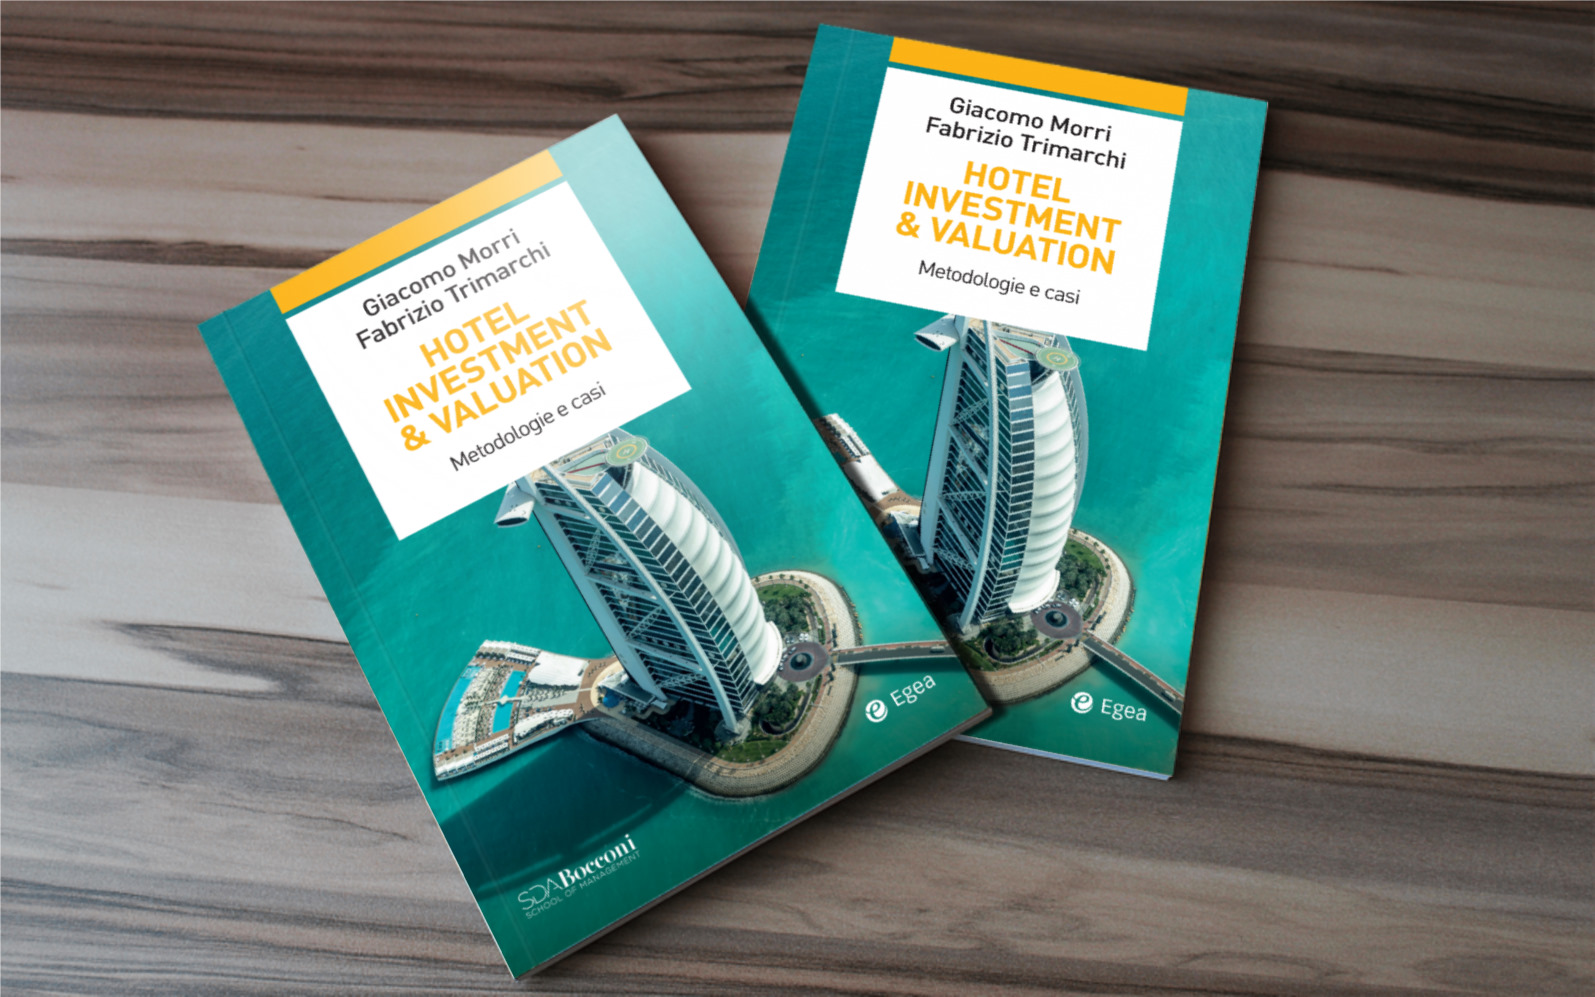 Immobiliare. Il libro ‘Hotel Investment & Valuation – Metodologie e casi’ fa chiarezza nel settore